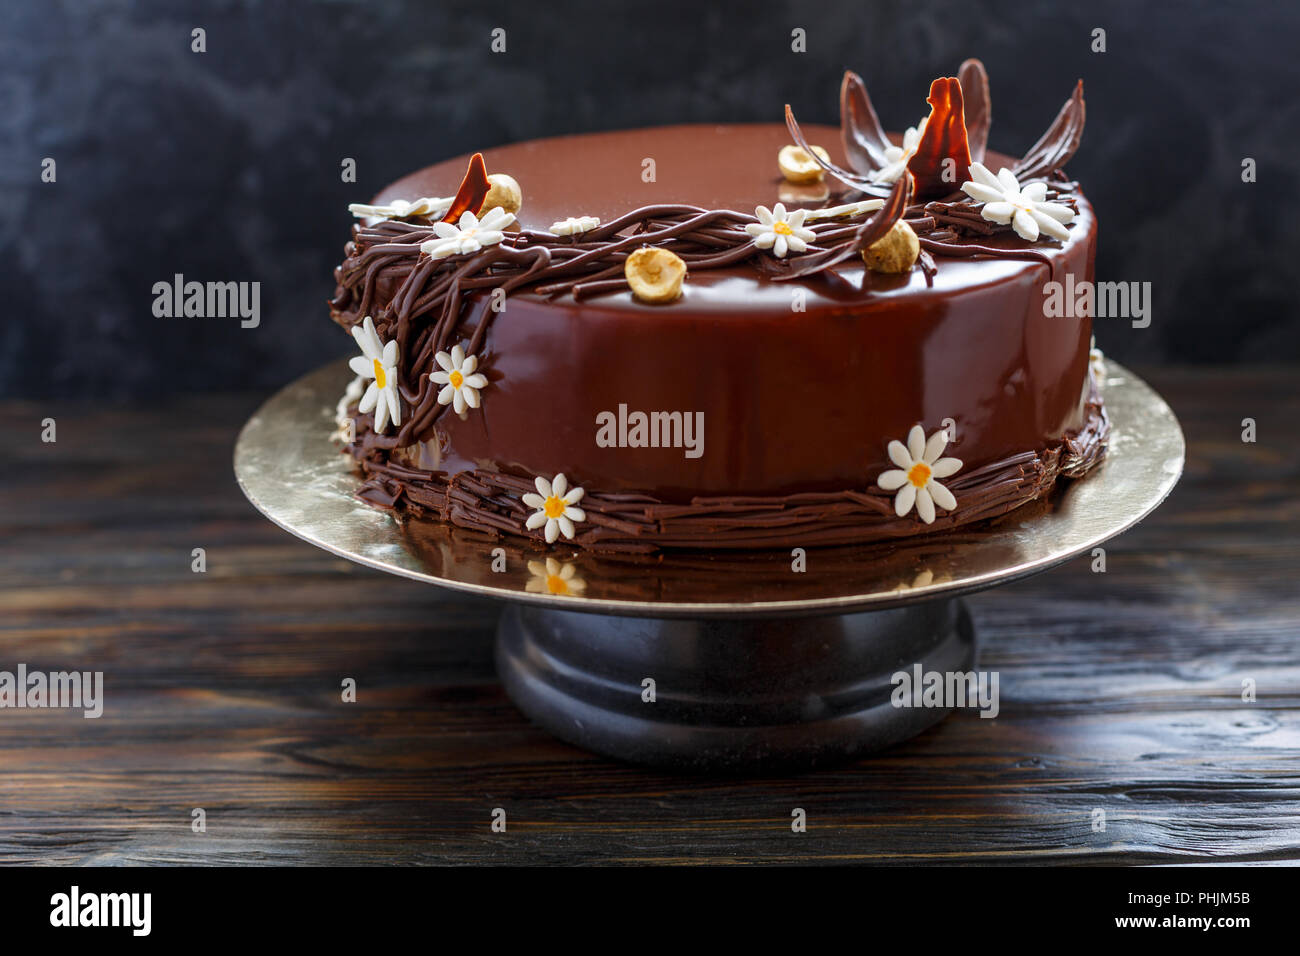 Gâteau glacé au chocolat avec décor floral. Banque D'Images